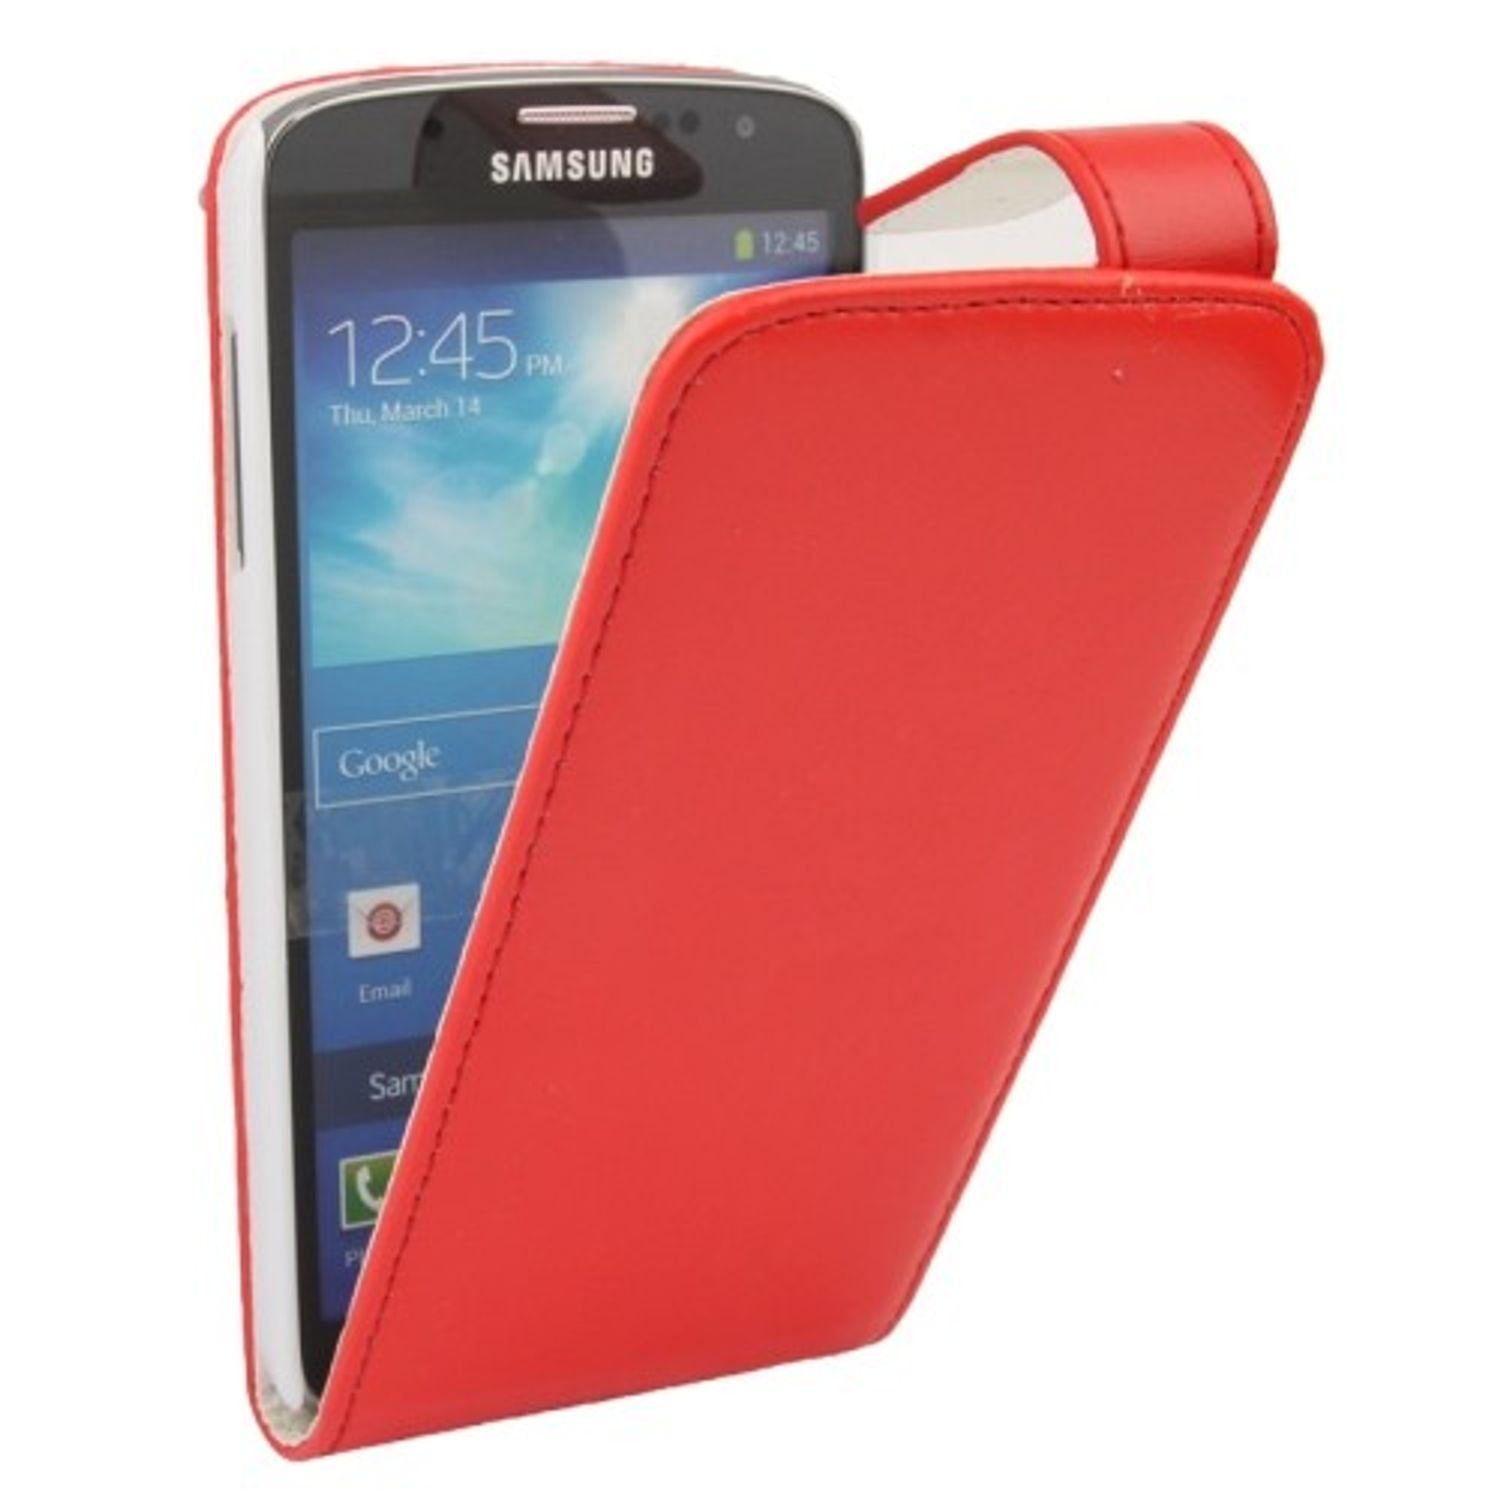 DESIGN Backcover, Schutzhülle, Galaxy KÖNIG Samsung, Rot S4 Active,